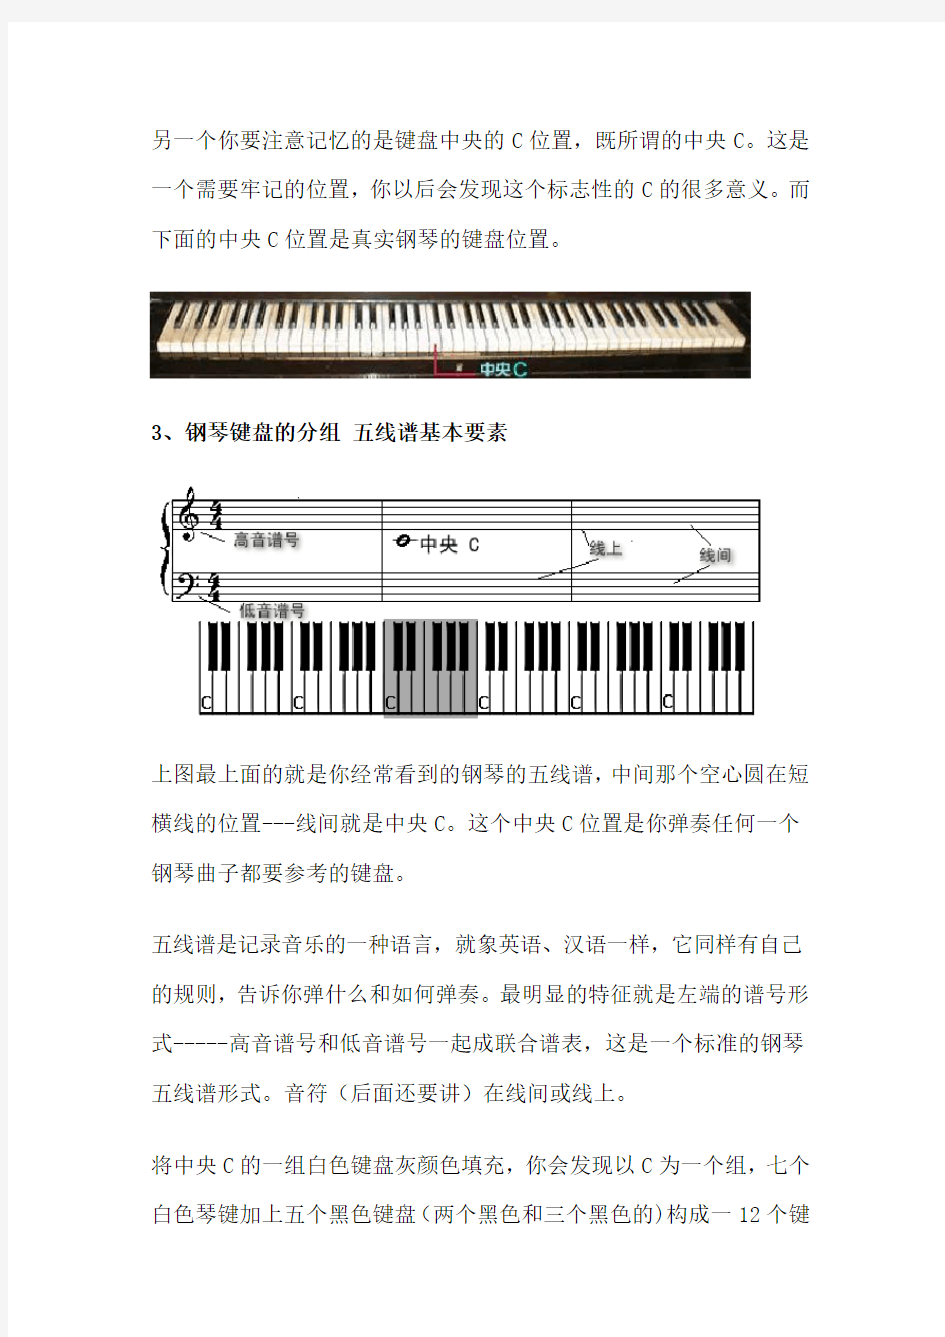 三分钟学会看键盘教你看懂钢琴五线谱